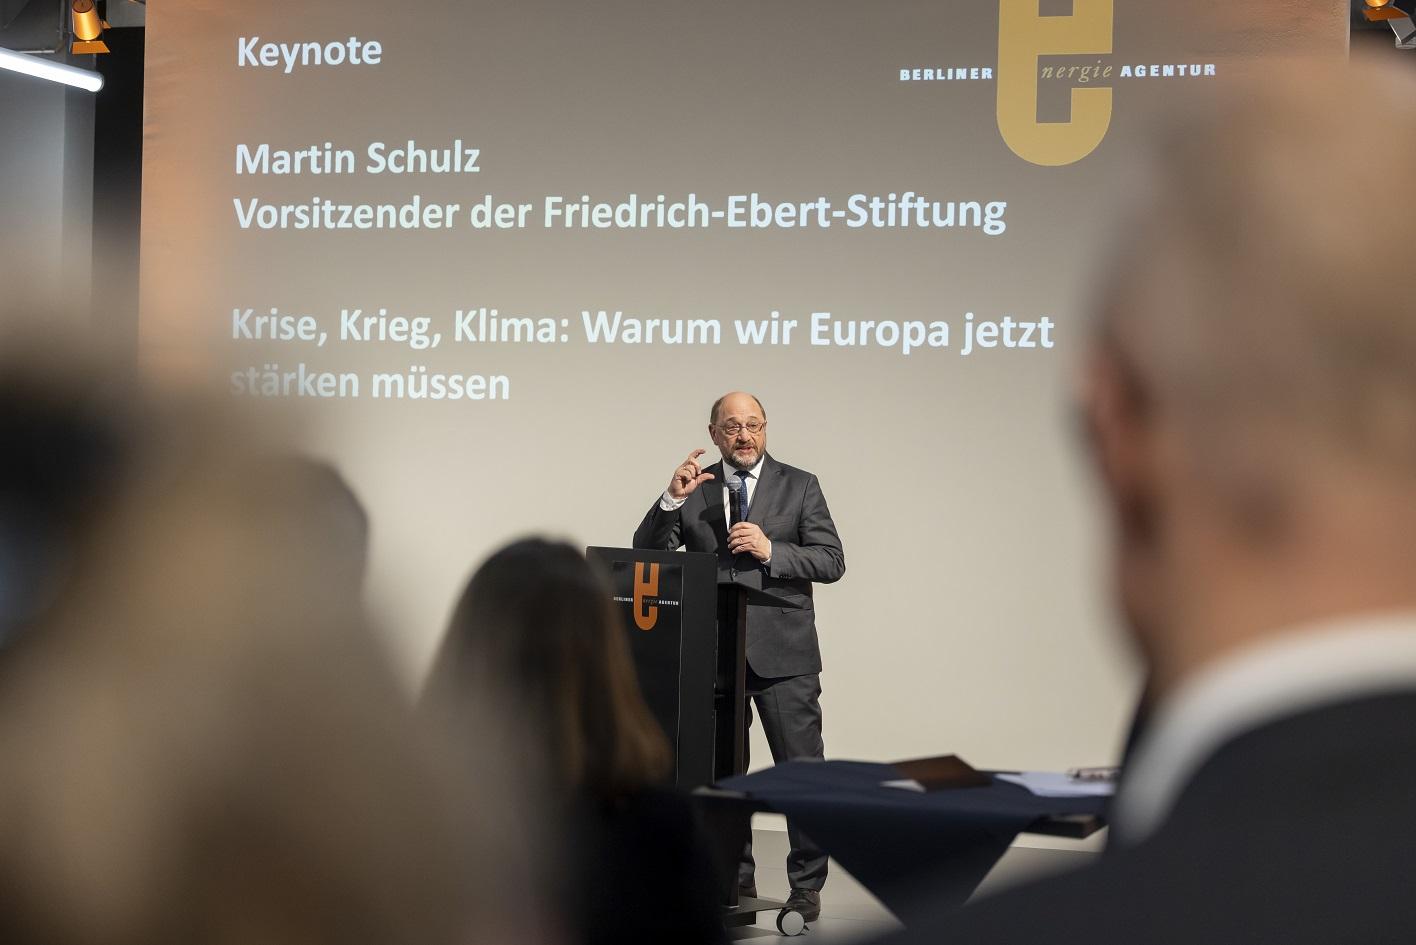 Martin Schulz, Vorsitzender der Friedrich-Ebert-Stiftung (FES) auf der Bühne.